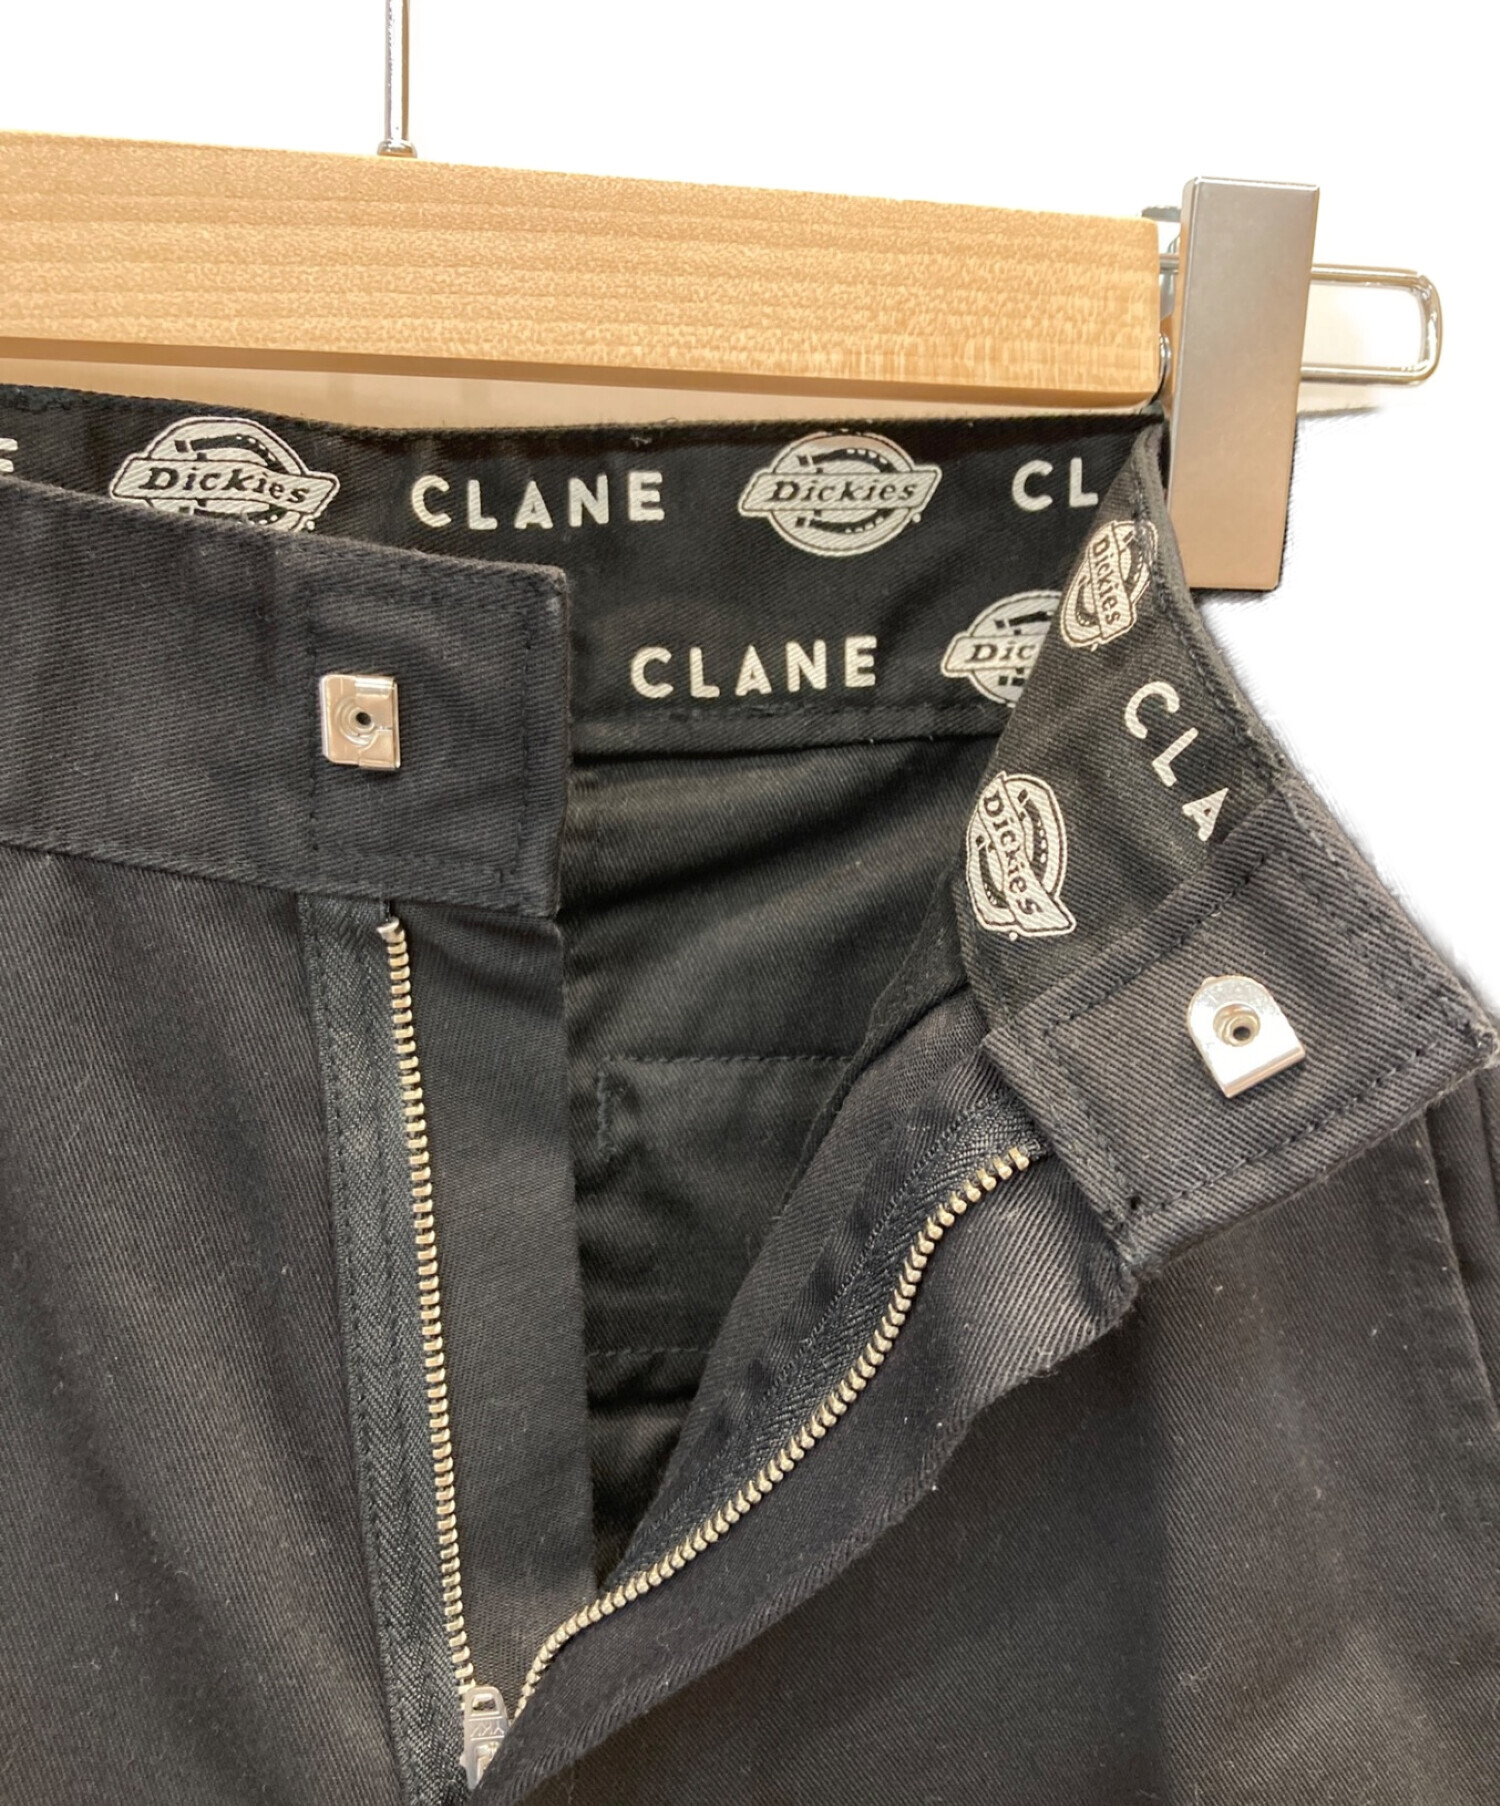 CLANE (クラネ) Dickies (ディッキーズ) ハイウェストワークパンツ ブラック サイズ:2